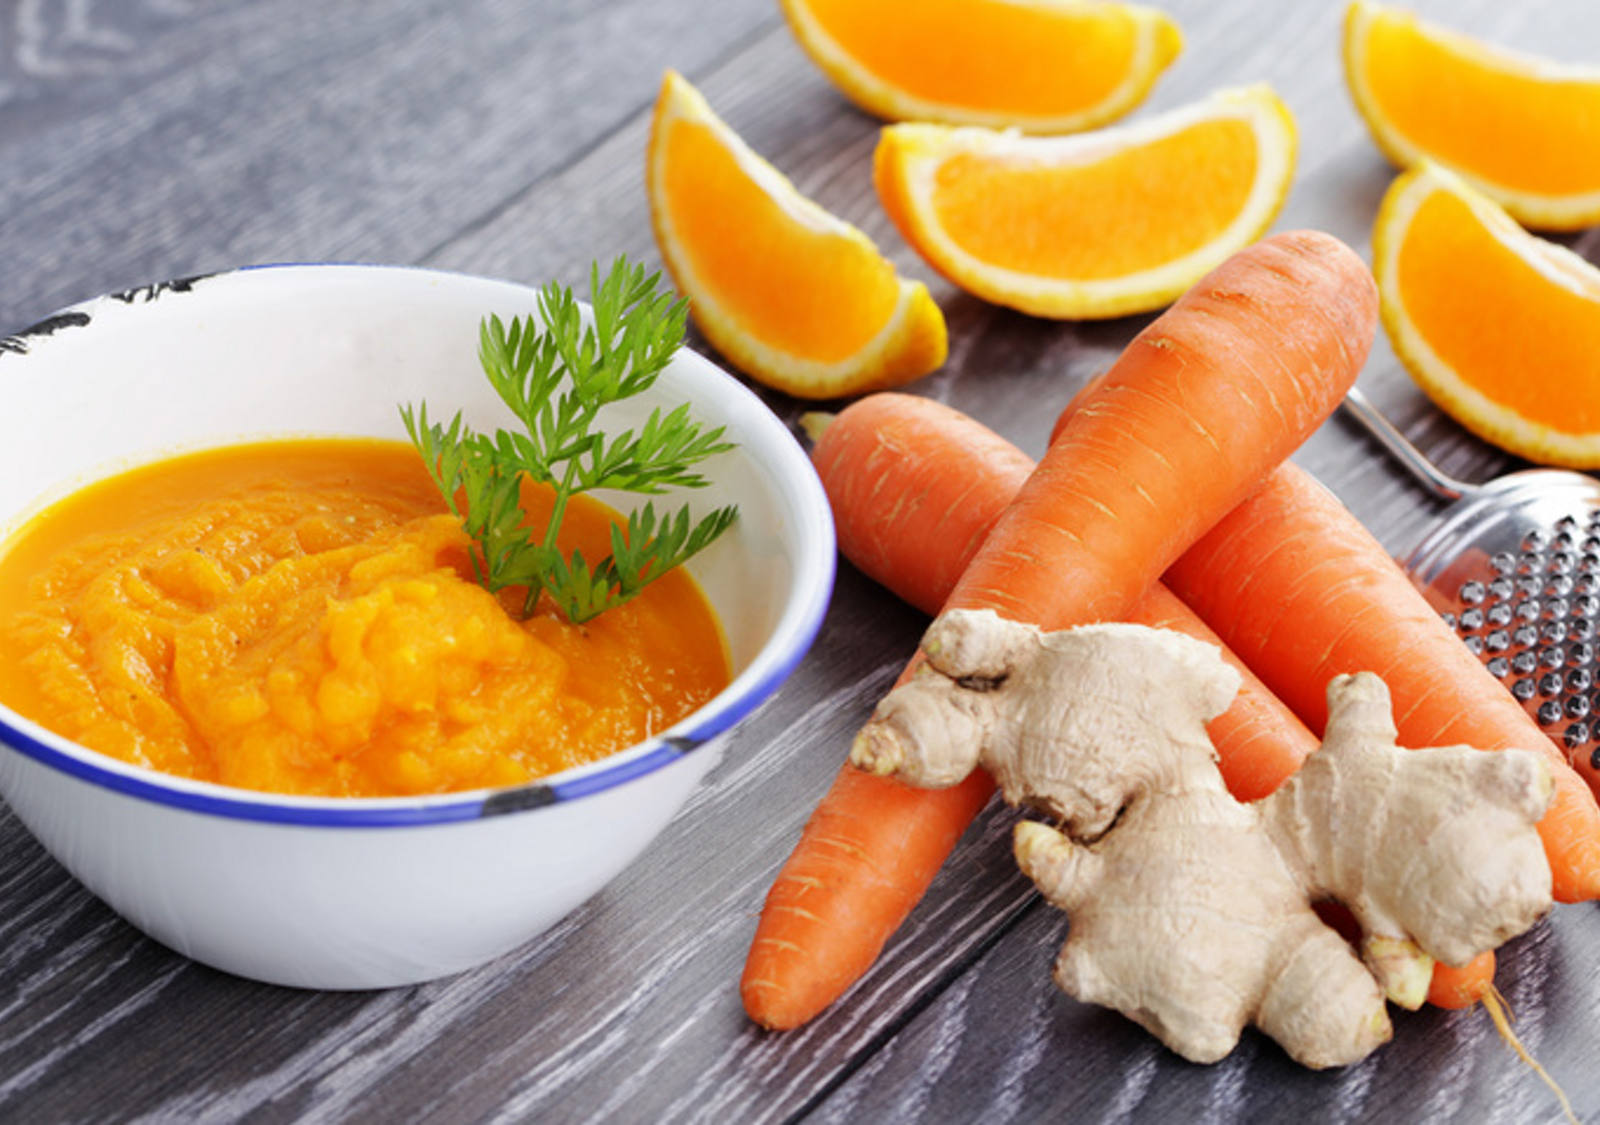 Zuppa di carote e zenzero